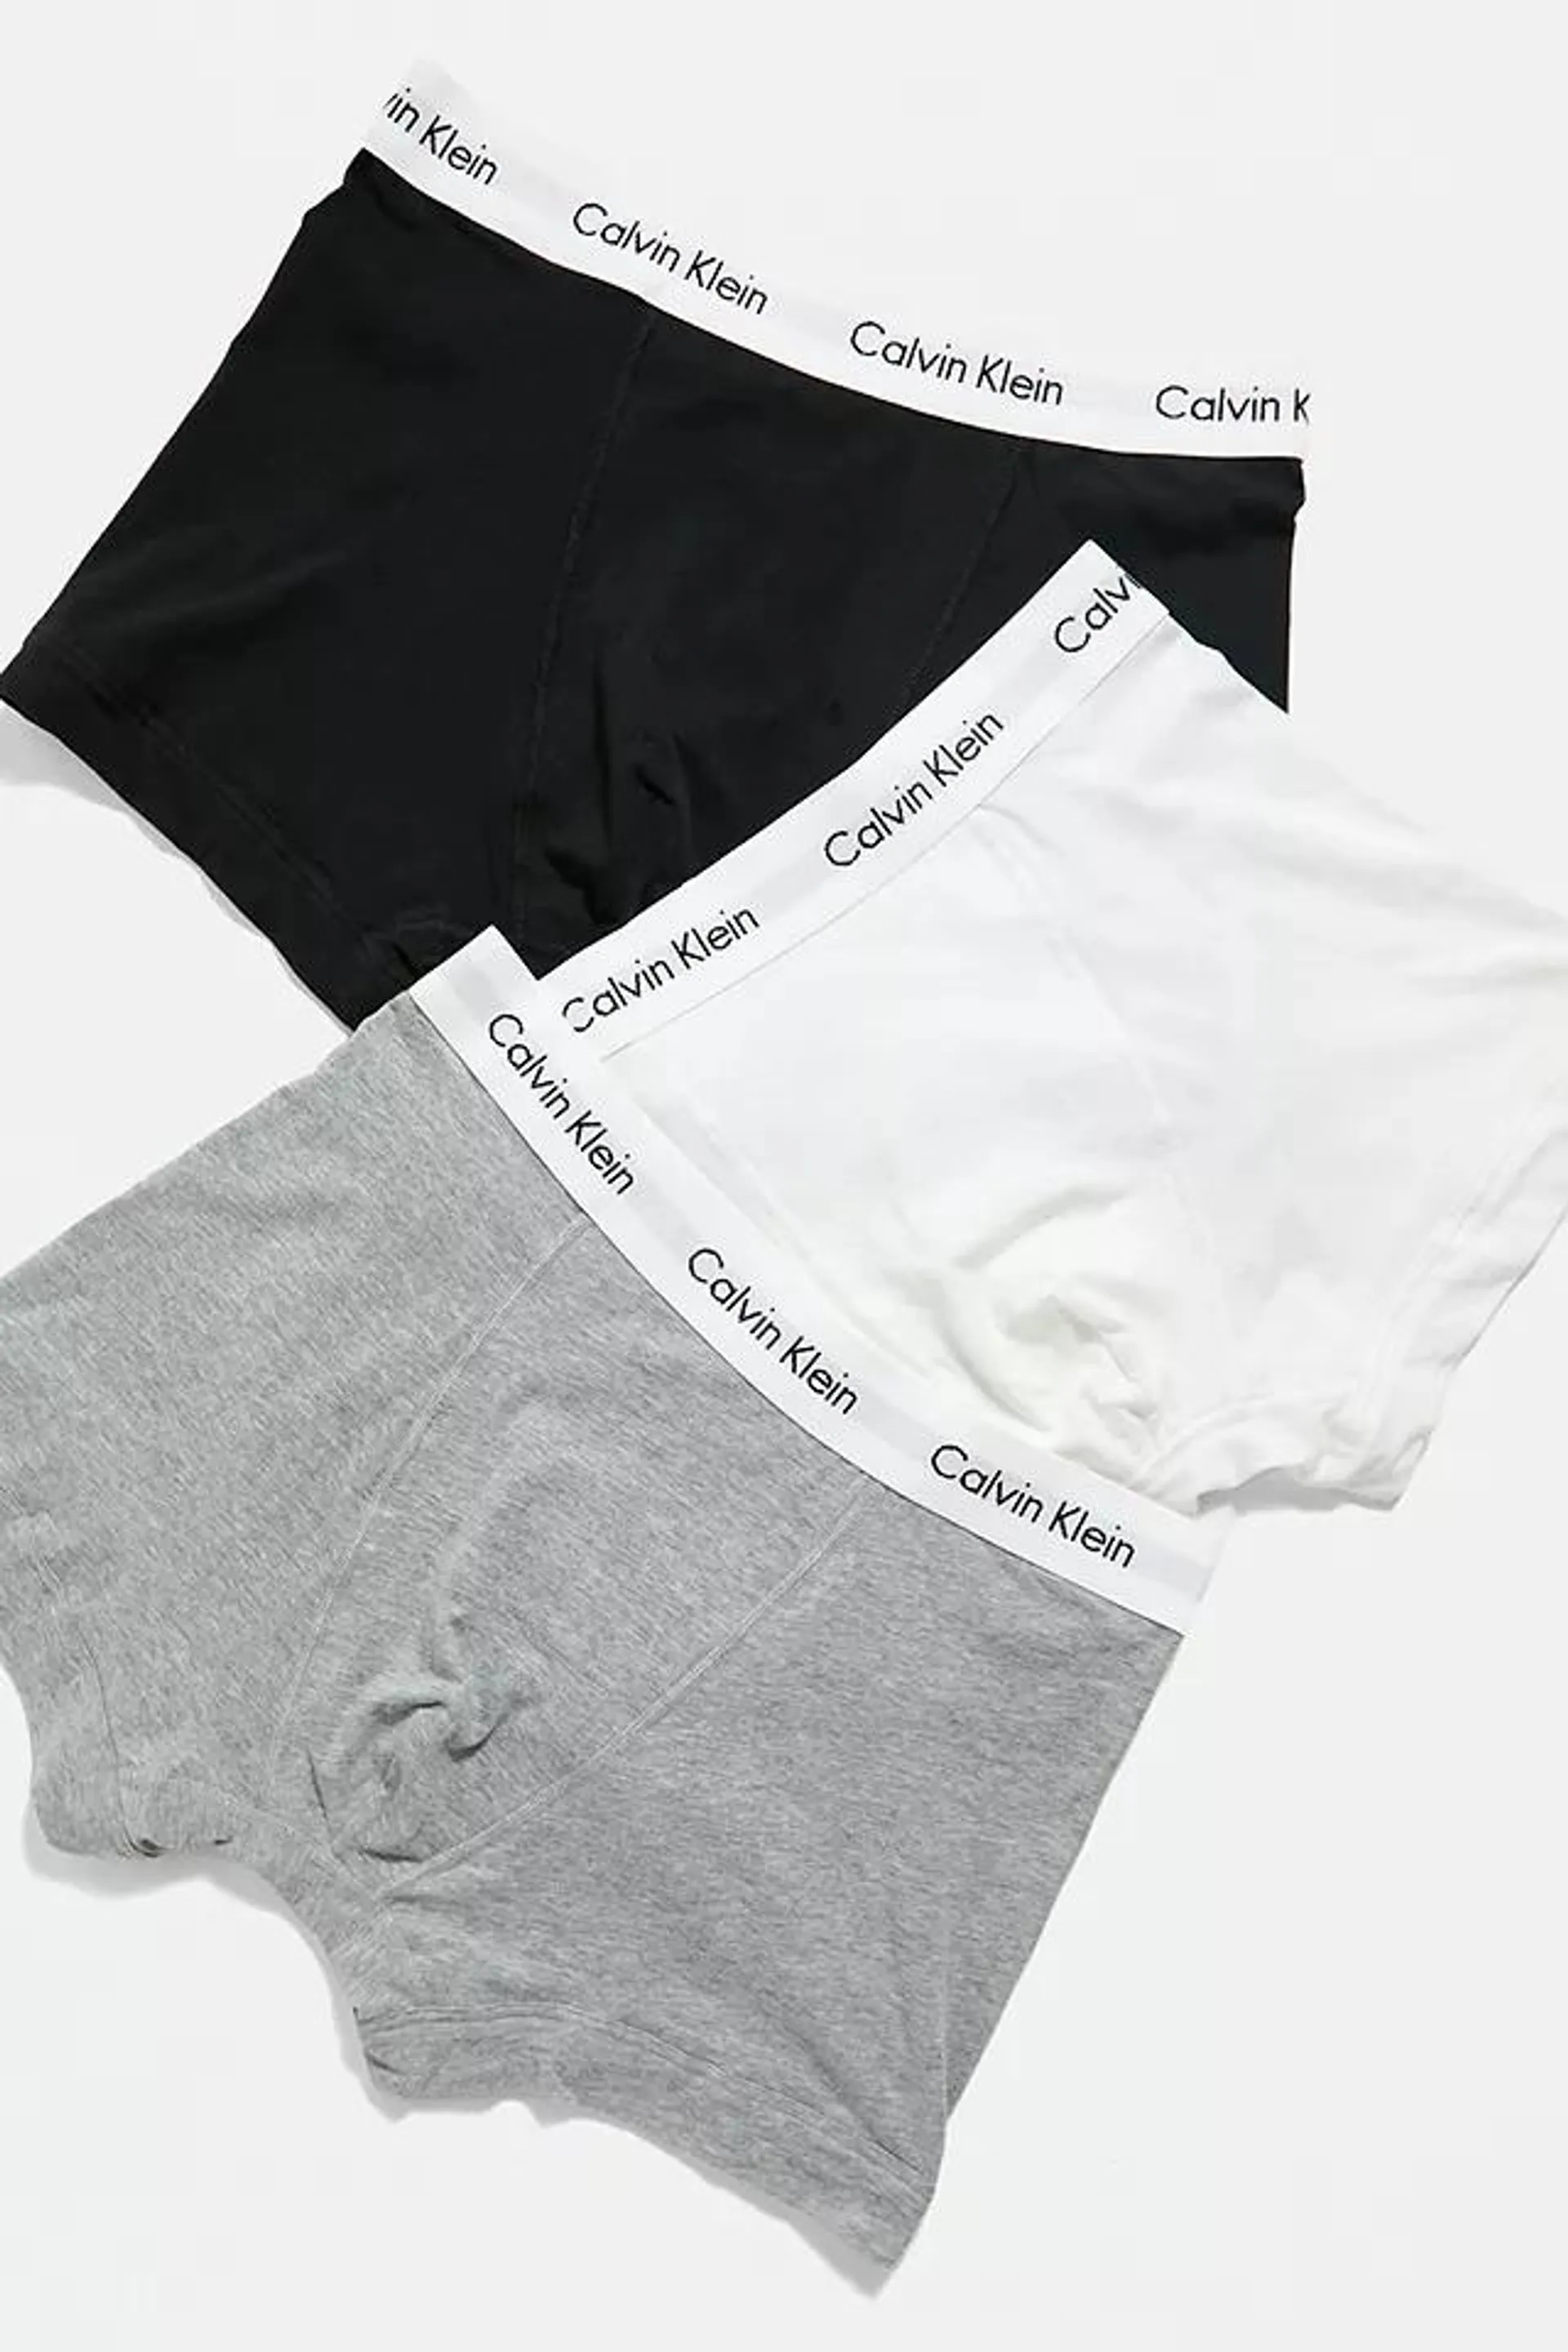 Calvin Klein - Lot de 3 boxers noir, blanc et gris